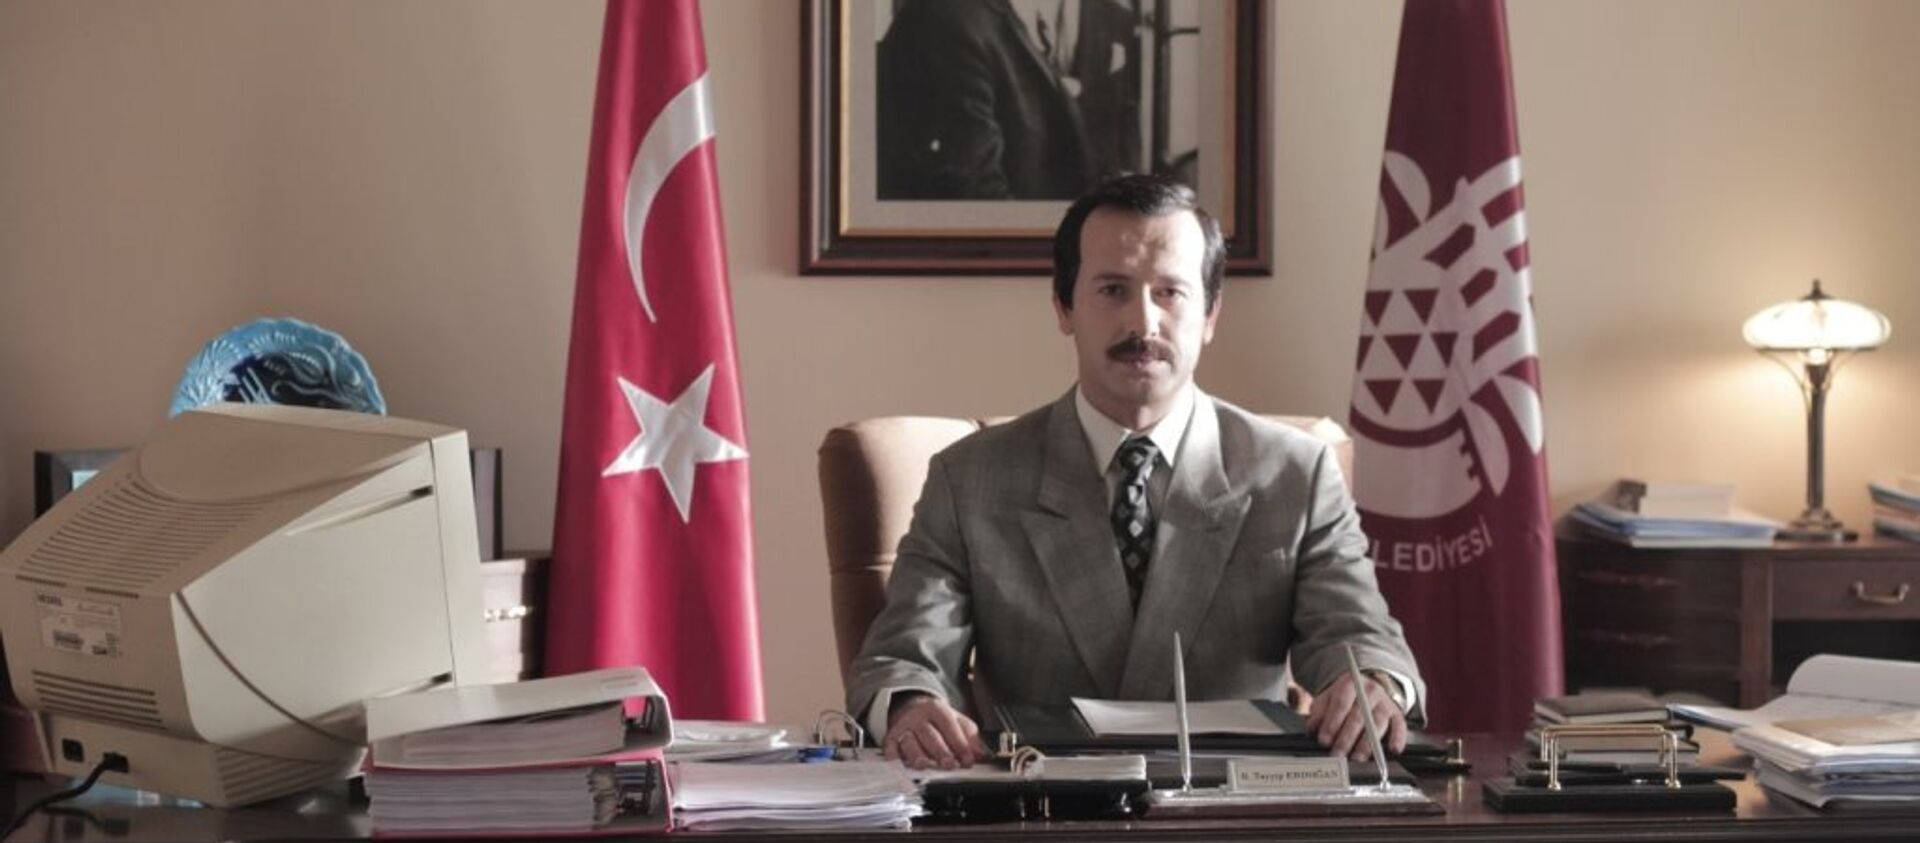 Cumhurbaşkanı Recep Tayyip Erdoğan'ın hayatını konu alan 'Reis' filmi - Sputnik Türkiye, 1920, 24.10.2016